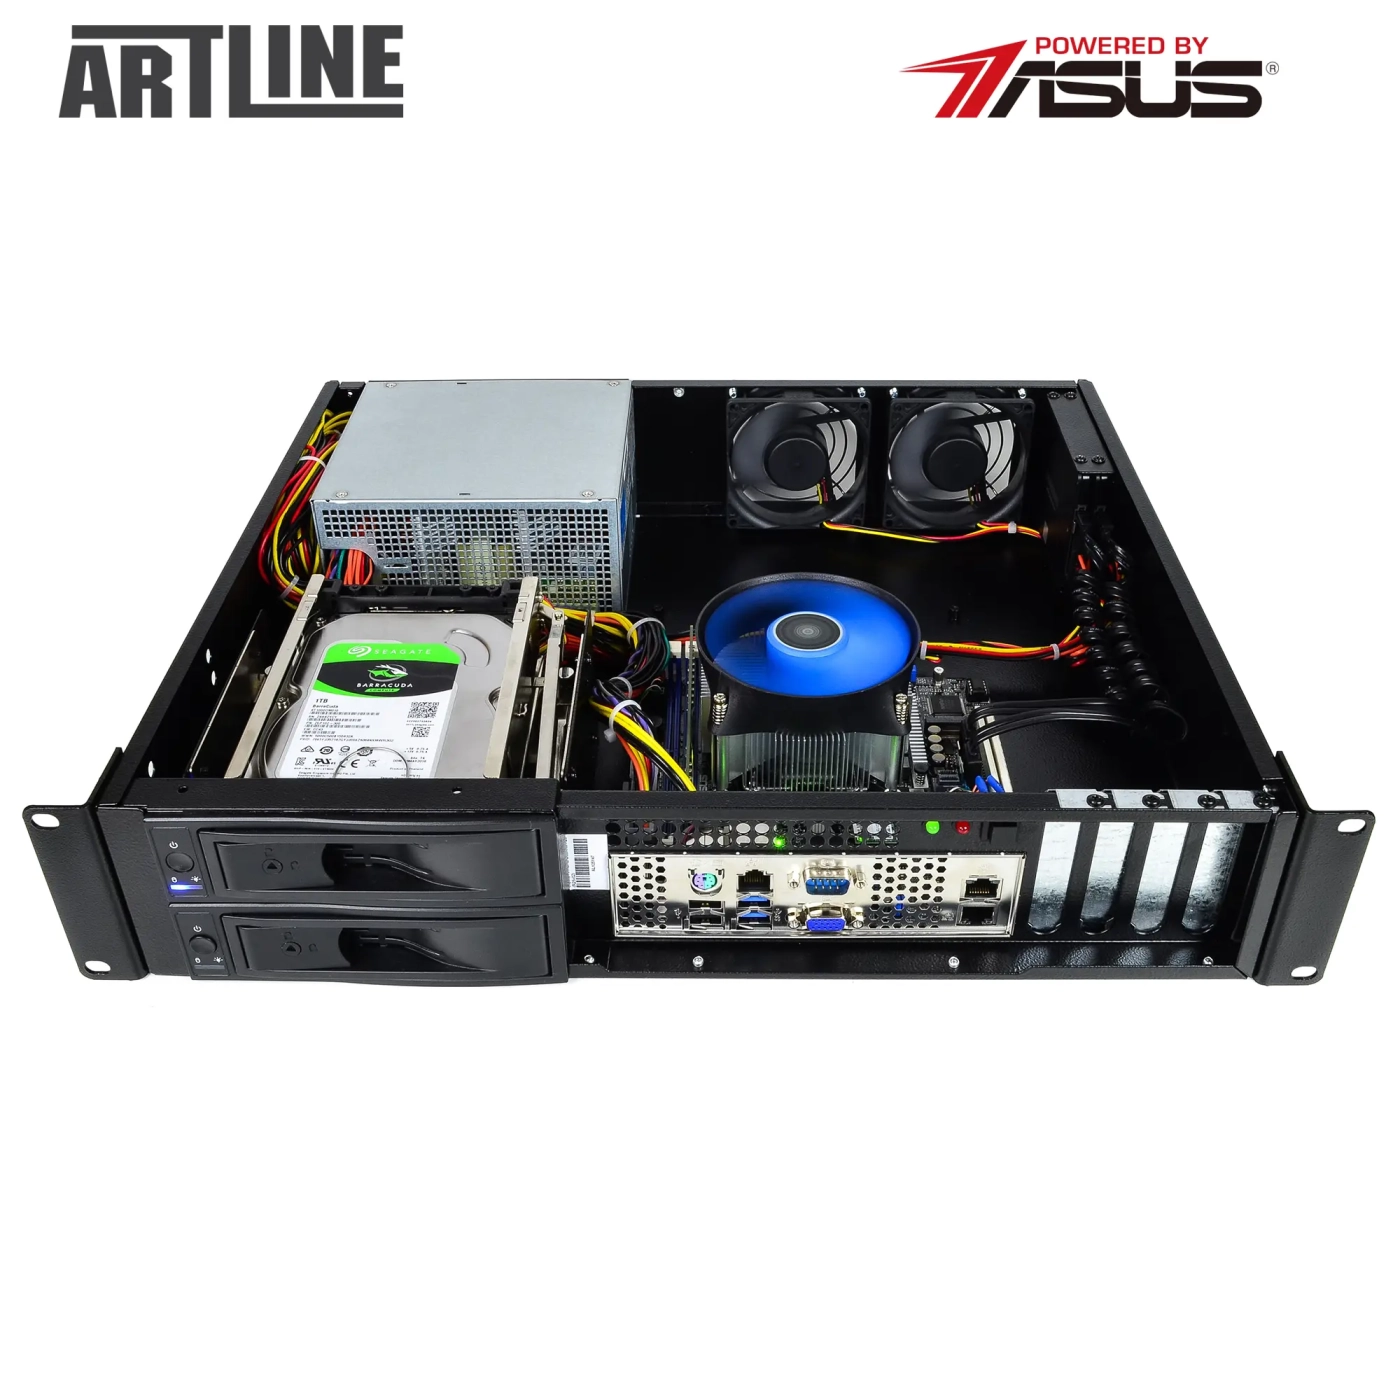 Купить Сервер ARTLINE Business R37 (R37v100) - фото 9